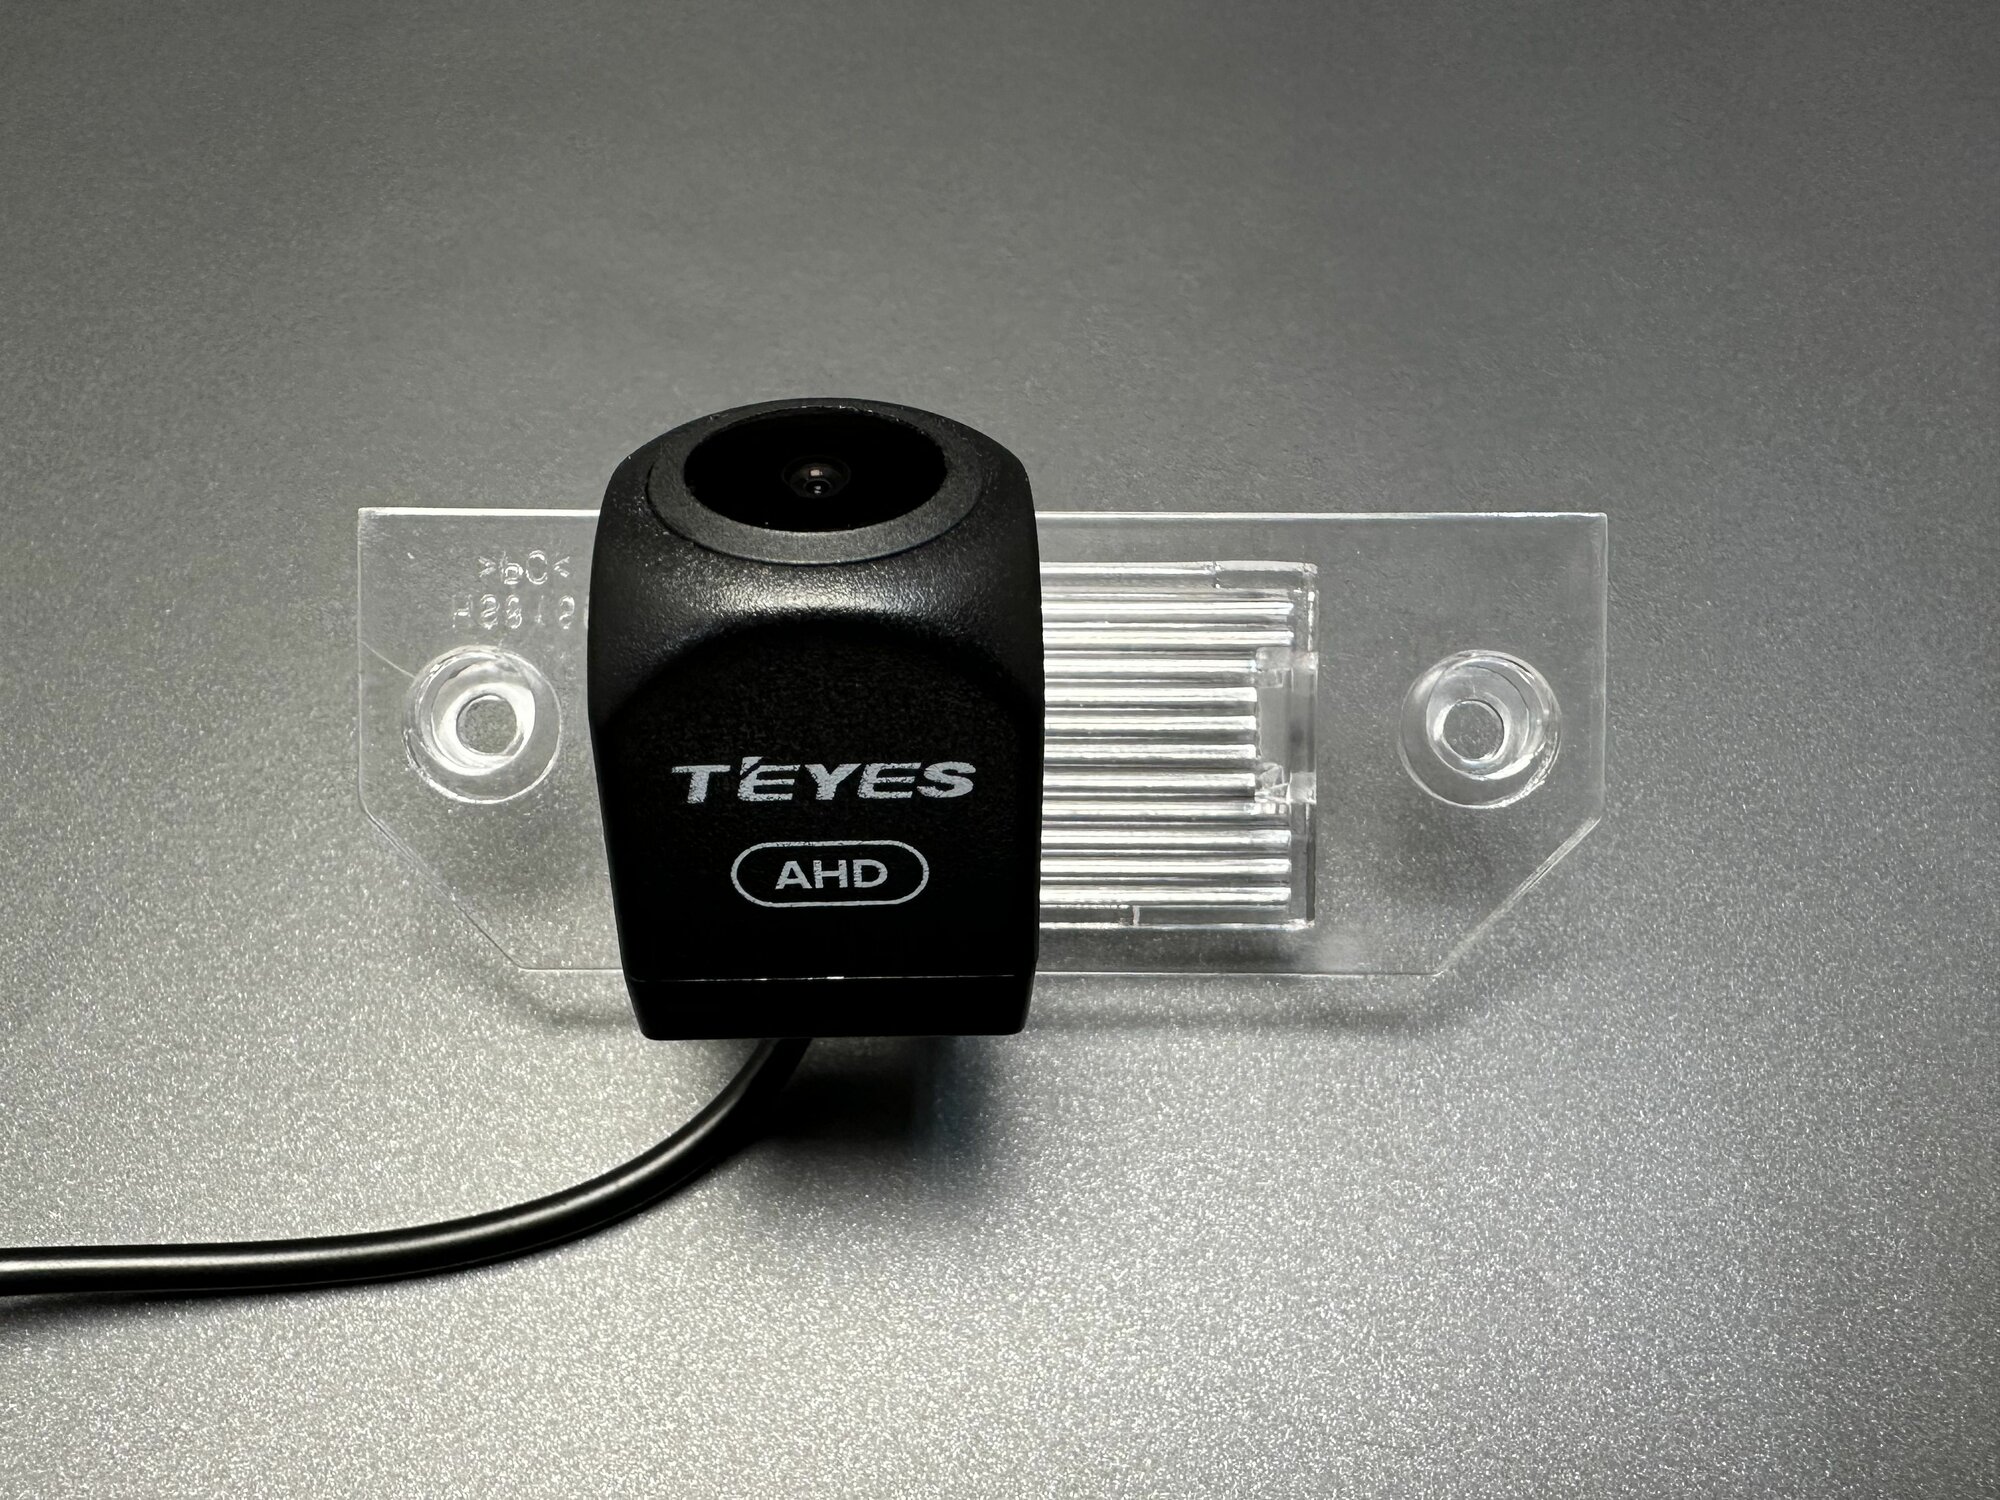 Камера заднего вида Teyes AHD для Ford Focus 2 (Форд Фокус 2) 2005 - 2011 седан и универсал